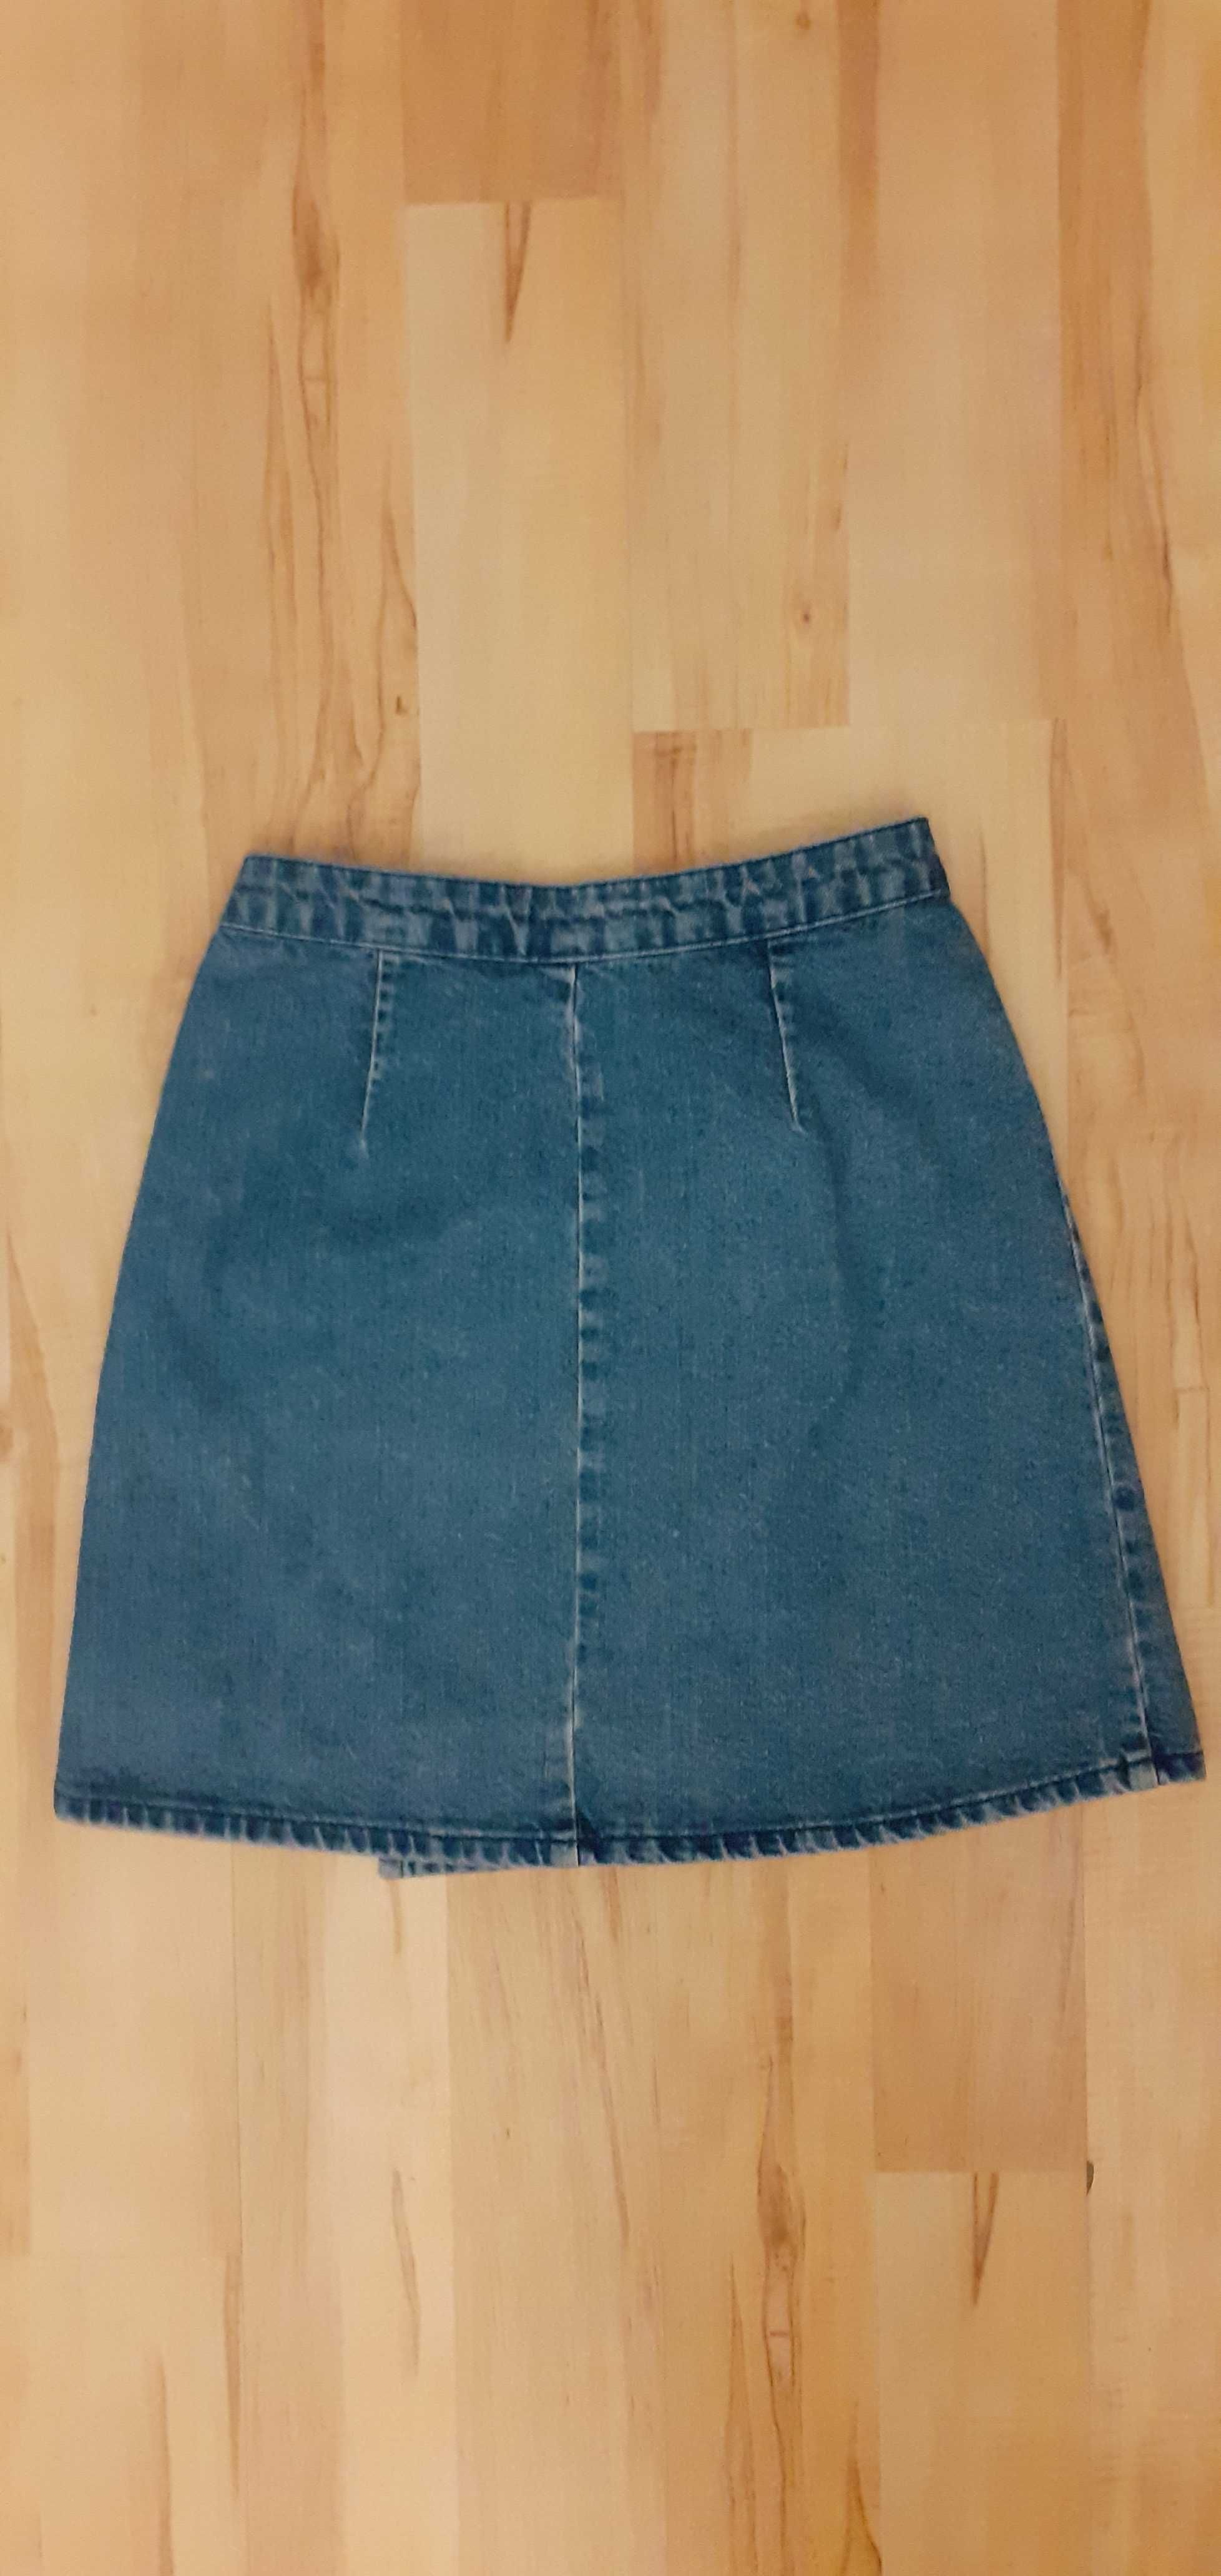 Jasno-niebieska jeansowa spódnica XS